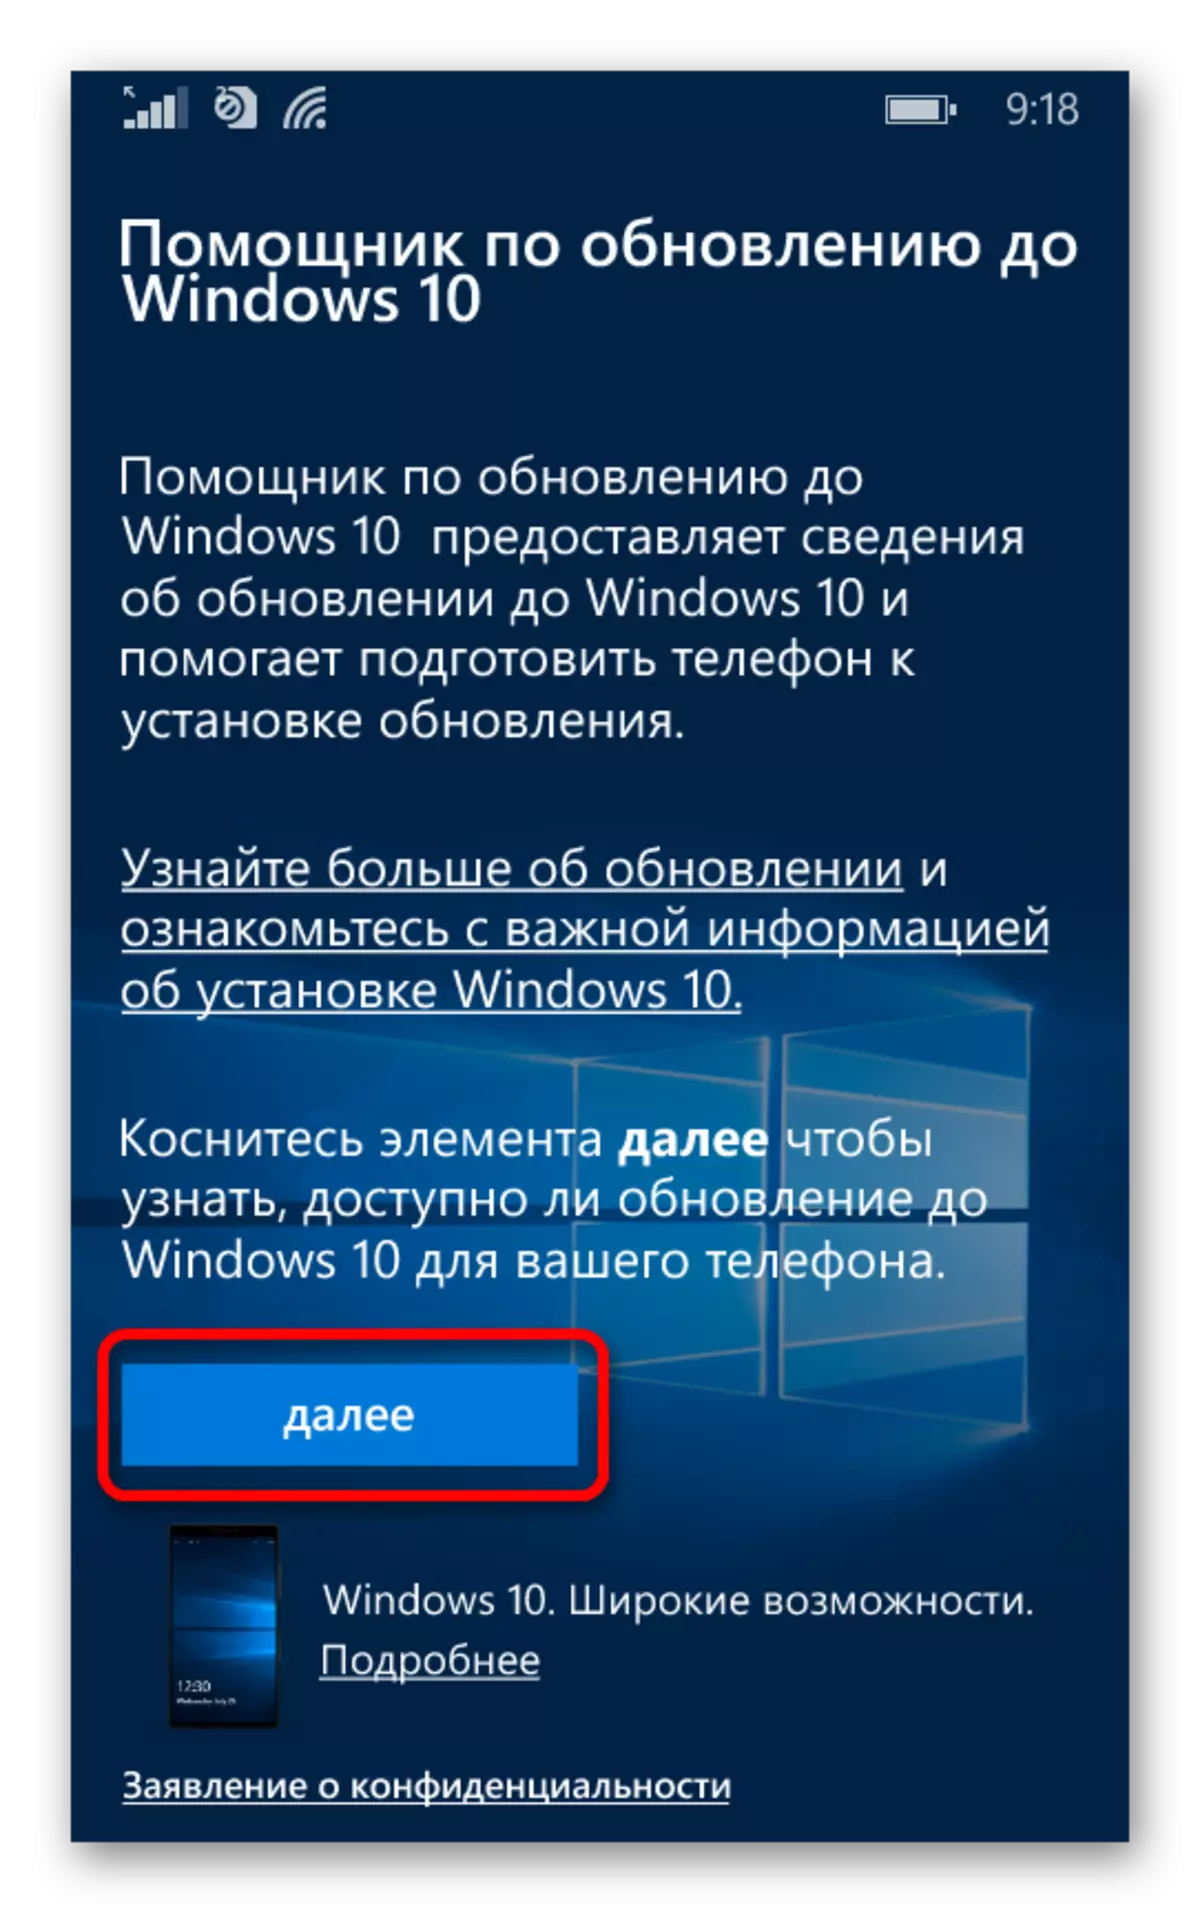 Start Update Check voor Windows Phone in een speciale toepassing